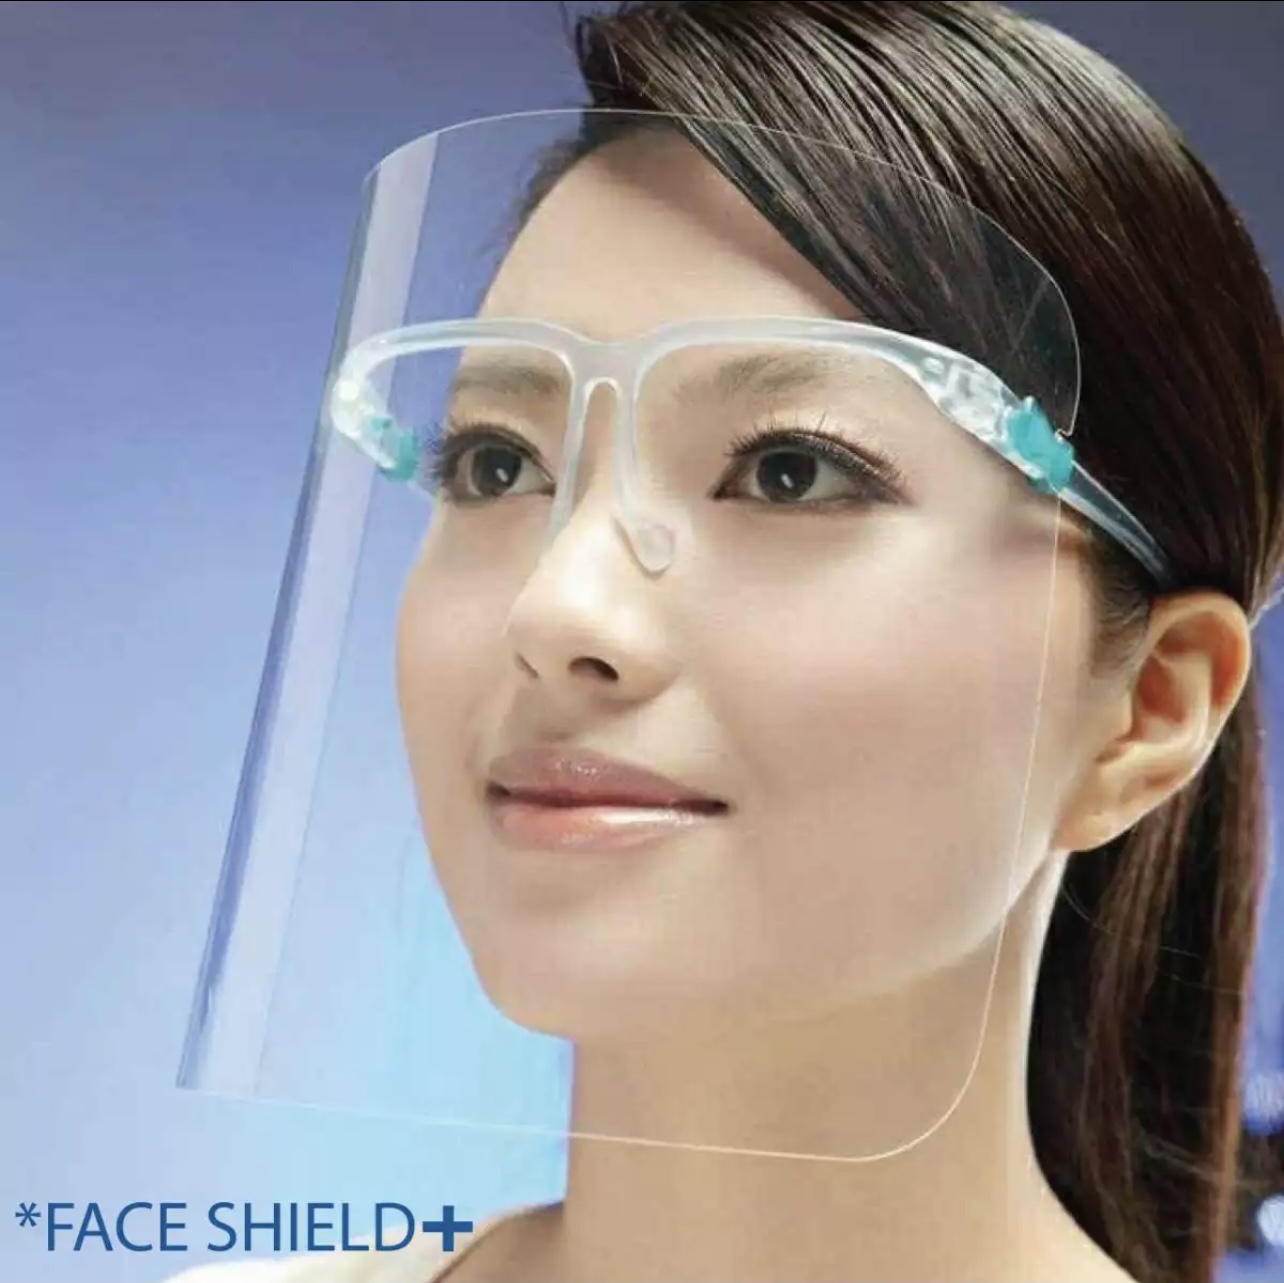 เฟซชิลด์ Face shield แว่นเฟสชิลd (ส่งจากไทย) อย่าลืมลอกพลาสติกออกจากแผ่นใสนะคะ พลาสติกเกรดเอ ไม่แข็งไม่คม ประกอบง่าย สวมเหมือนแว่นตา